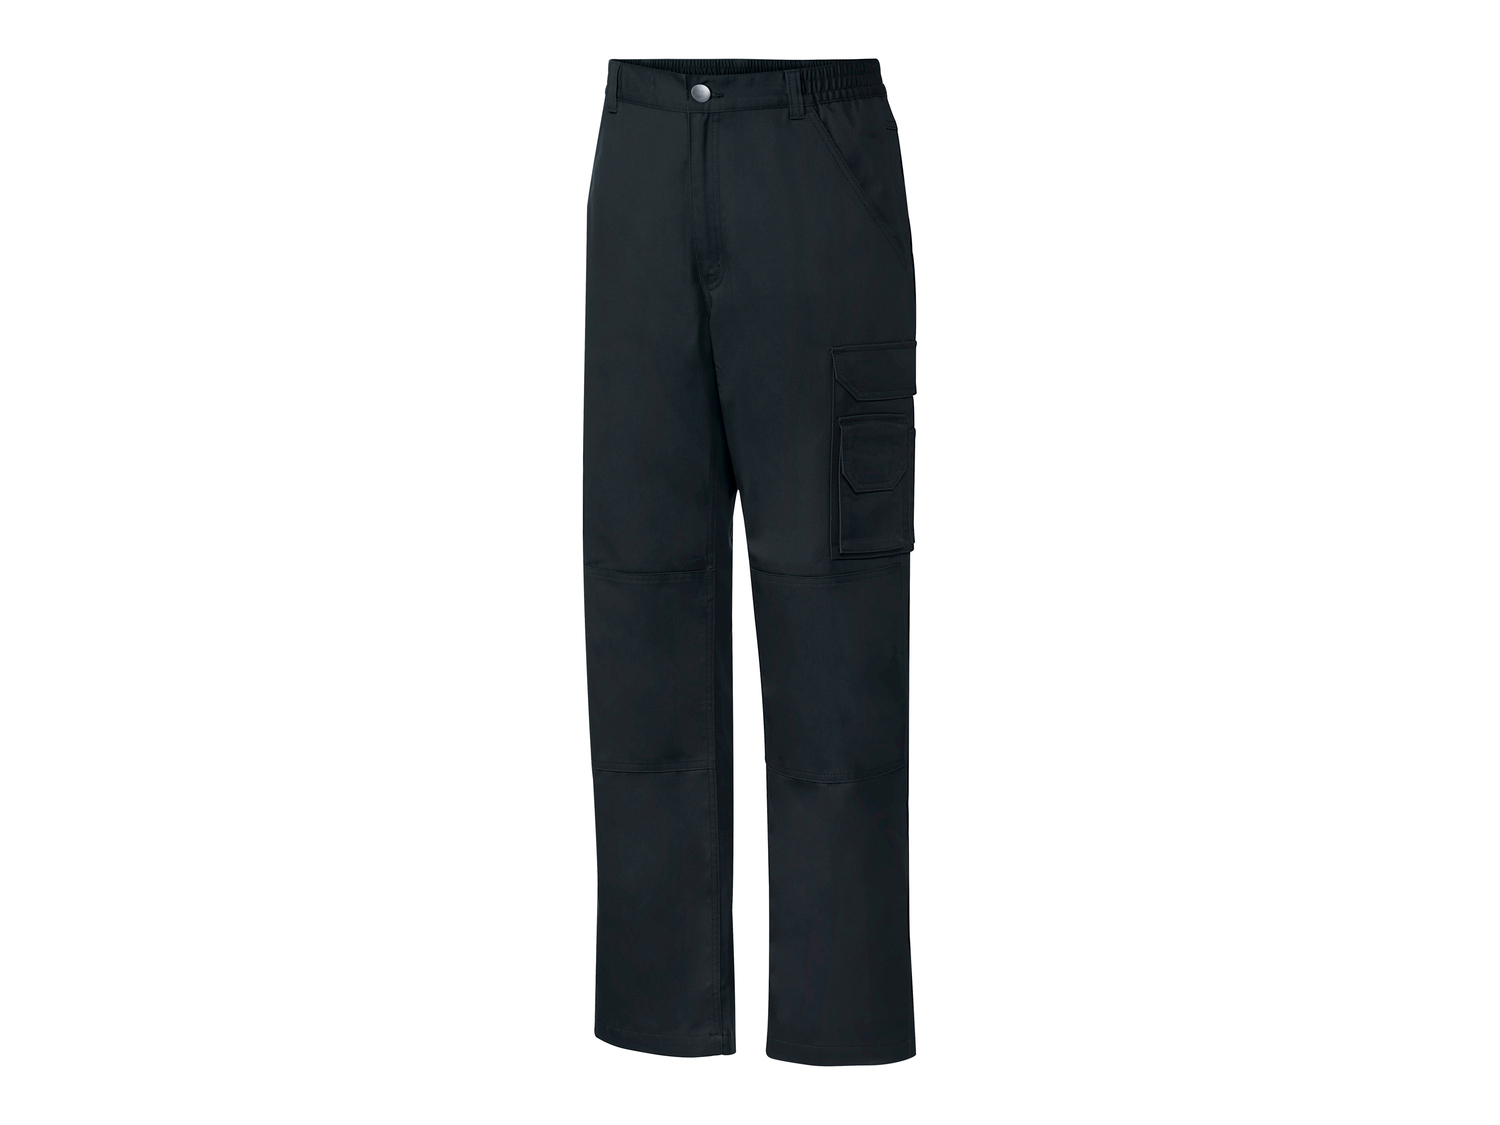 Pantaloni da lavoro per uomo Parkside, prezzo 14.99 &#8364; 
Misure: 48-58 
- ...